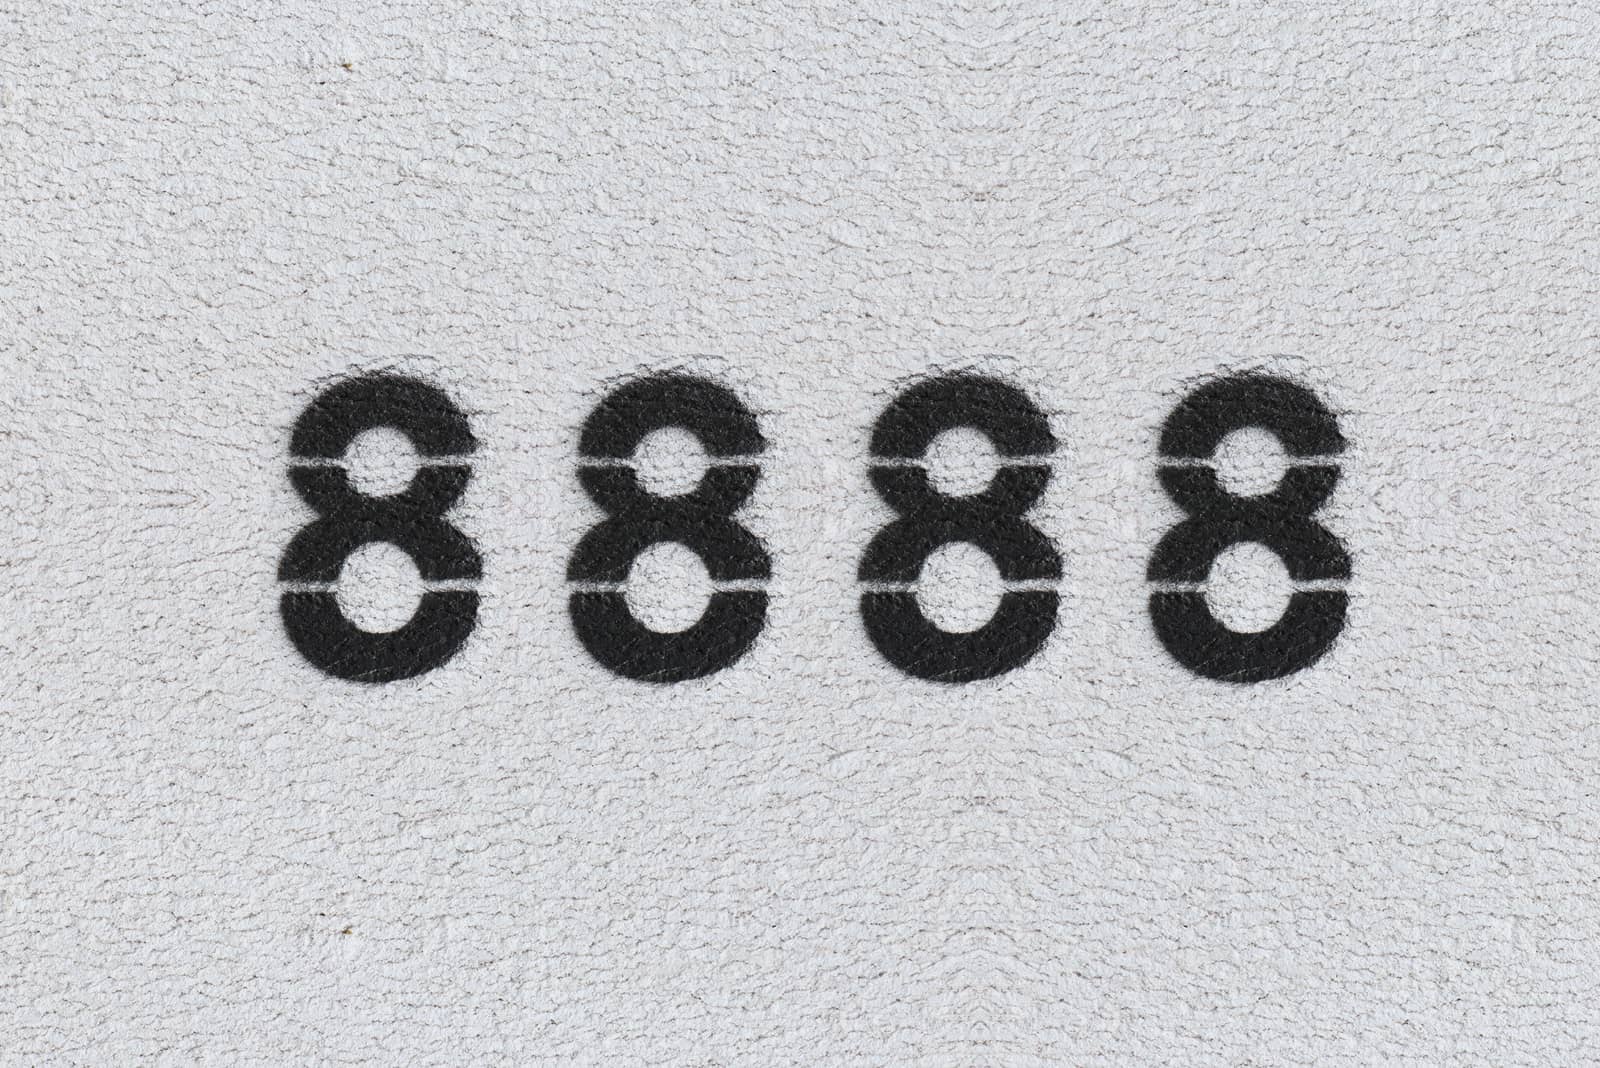 schwarze Zahlen 8888 auf grauem Hintergrund